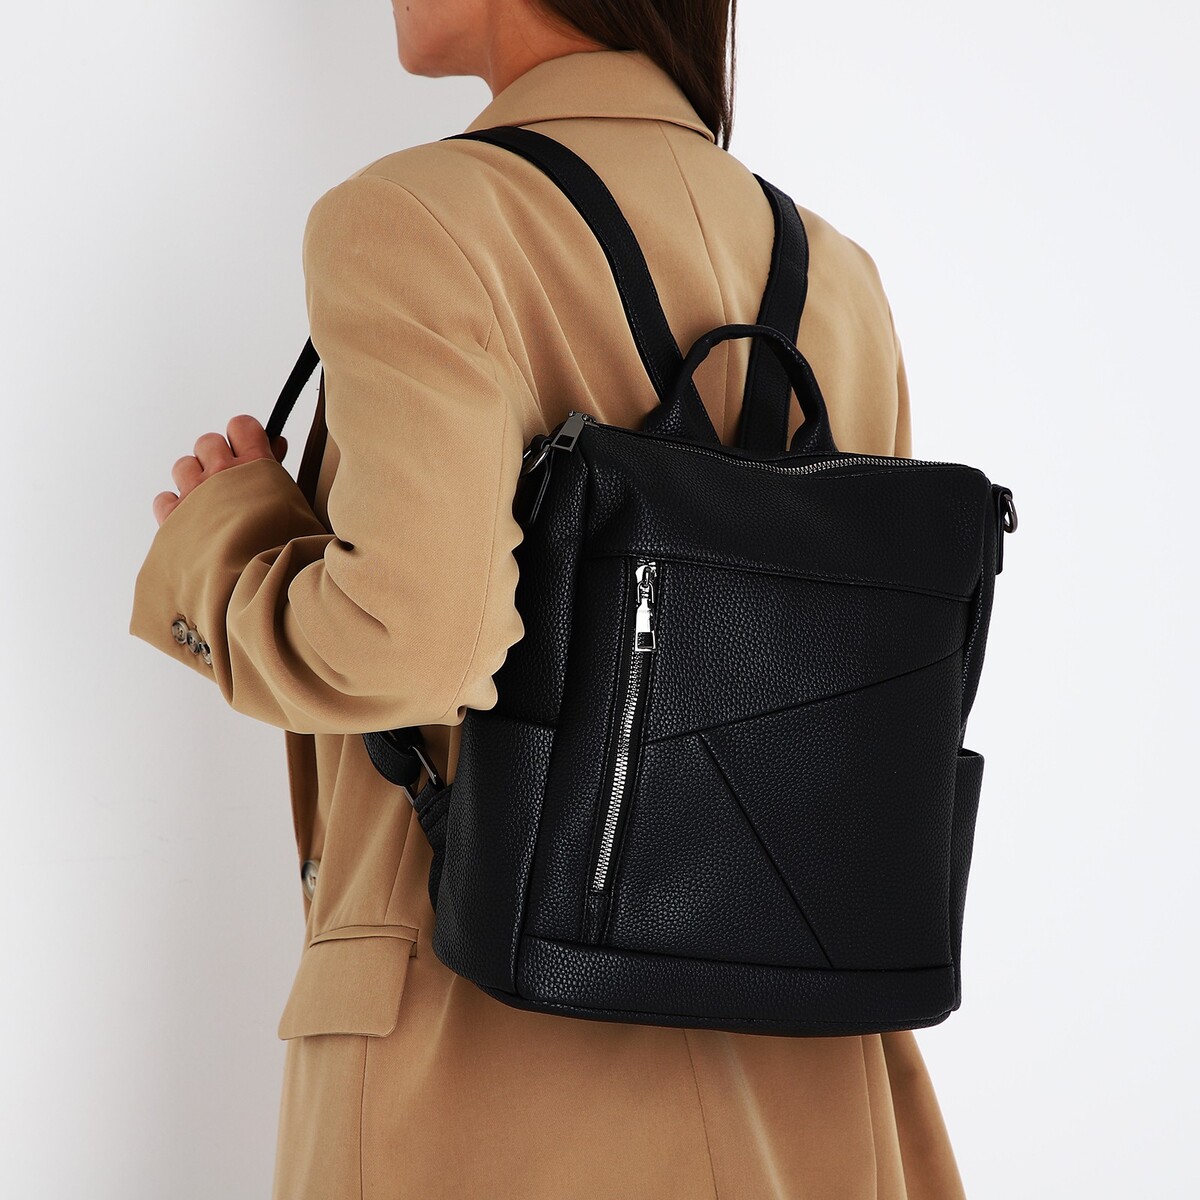 Рюкзак женский из искусственной кожи на молнии, 4 кармана, цвет черный